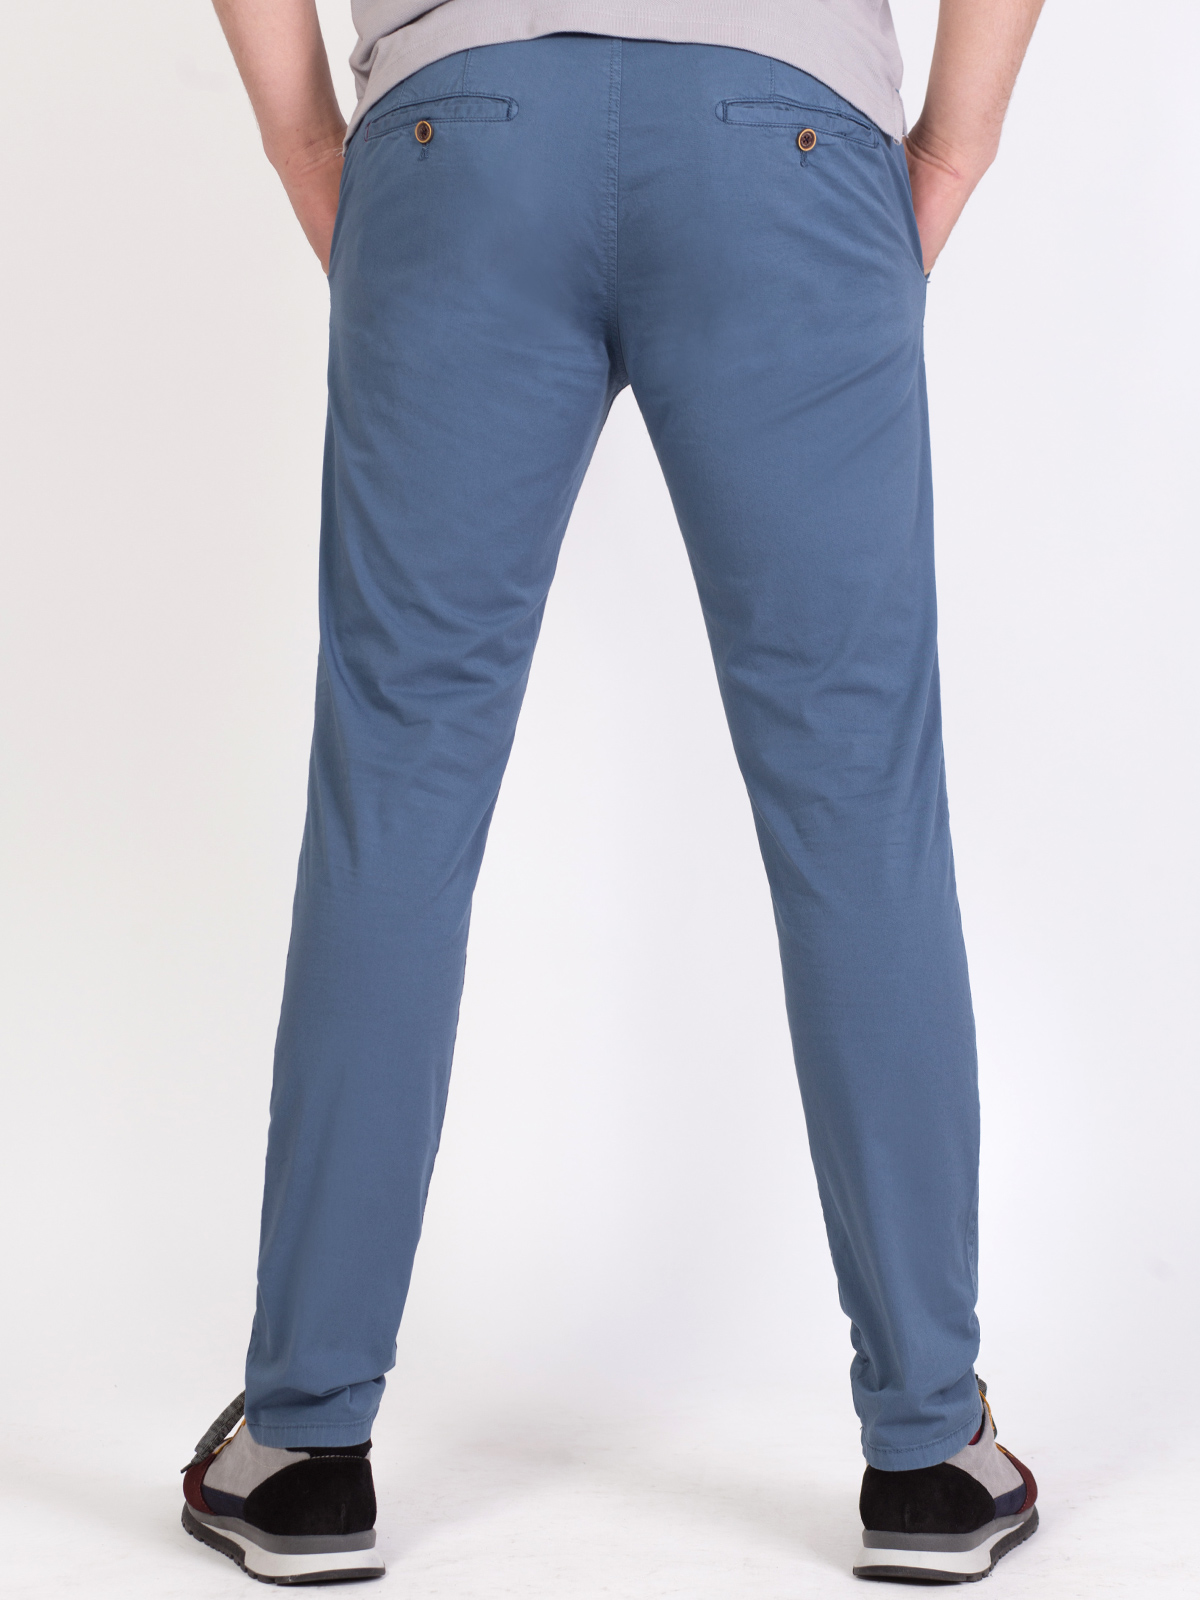 Втален панталон в светло синьо - 63312 88.00 лв img3